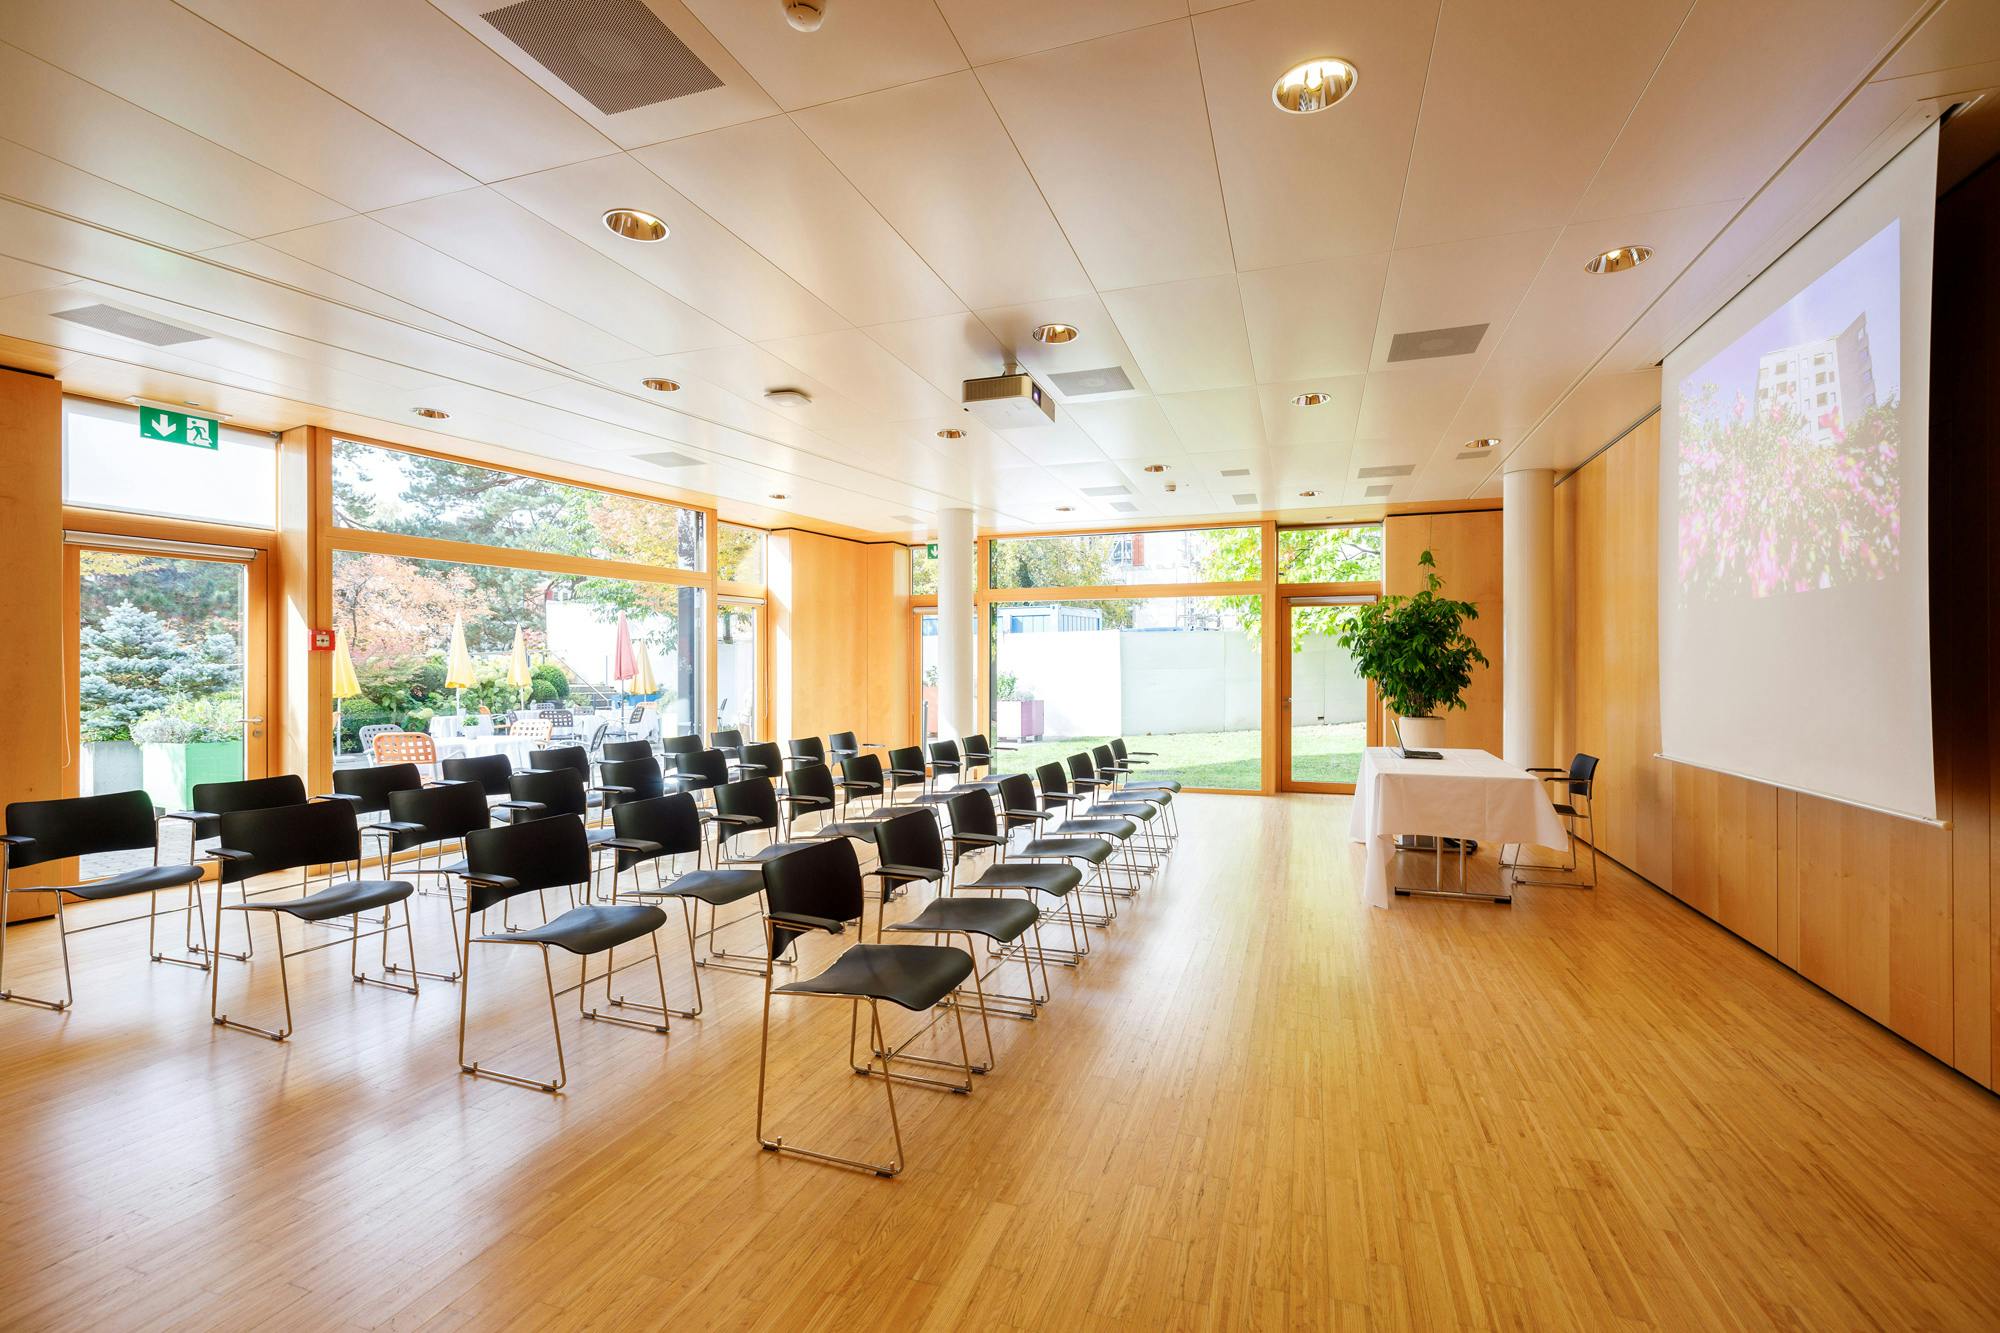 Leerer Konferenzraum mit Stuhlreihen und Holzboden.